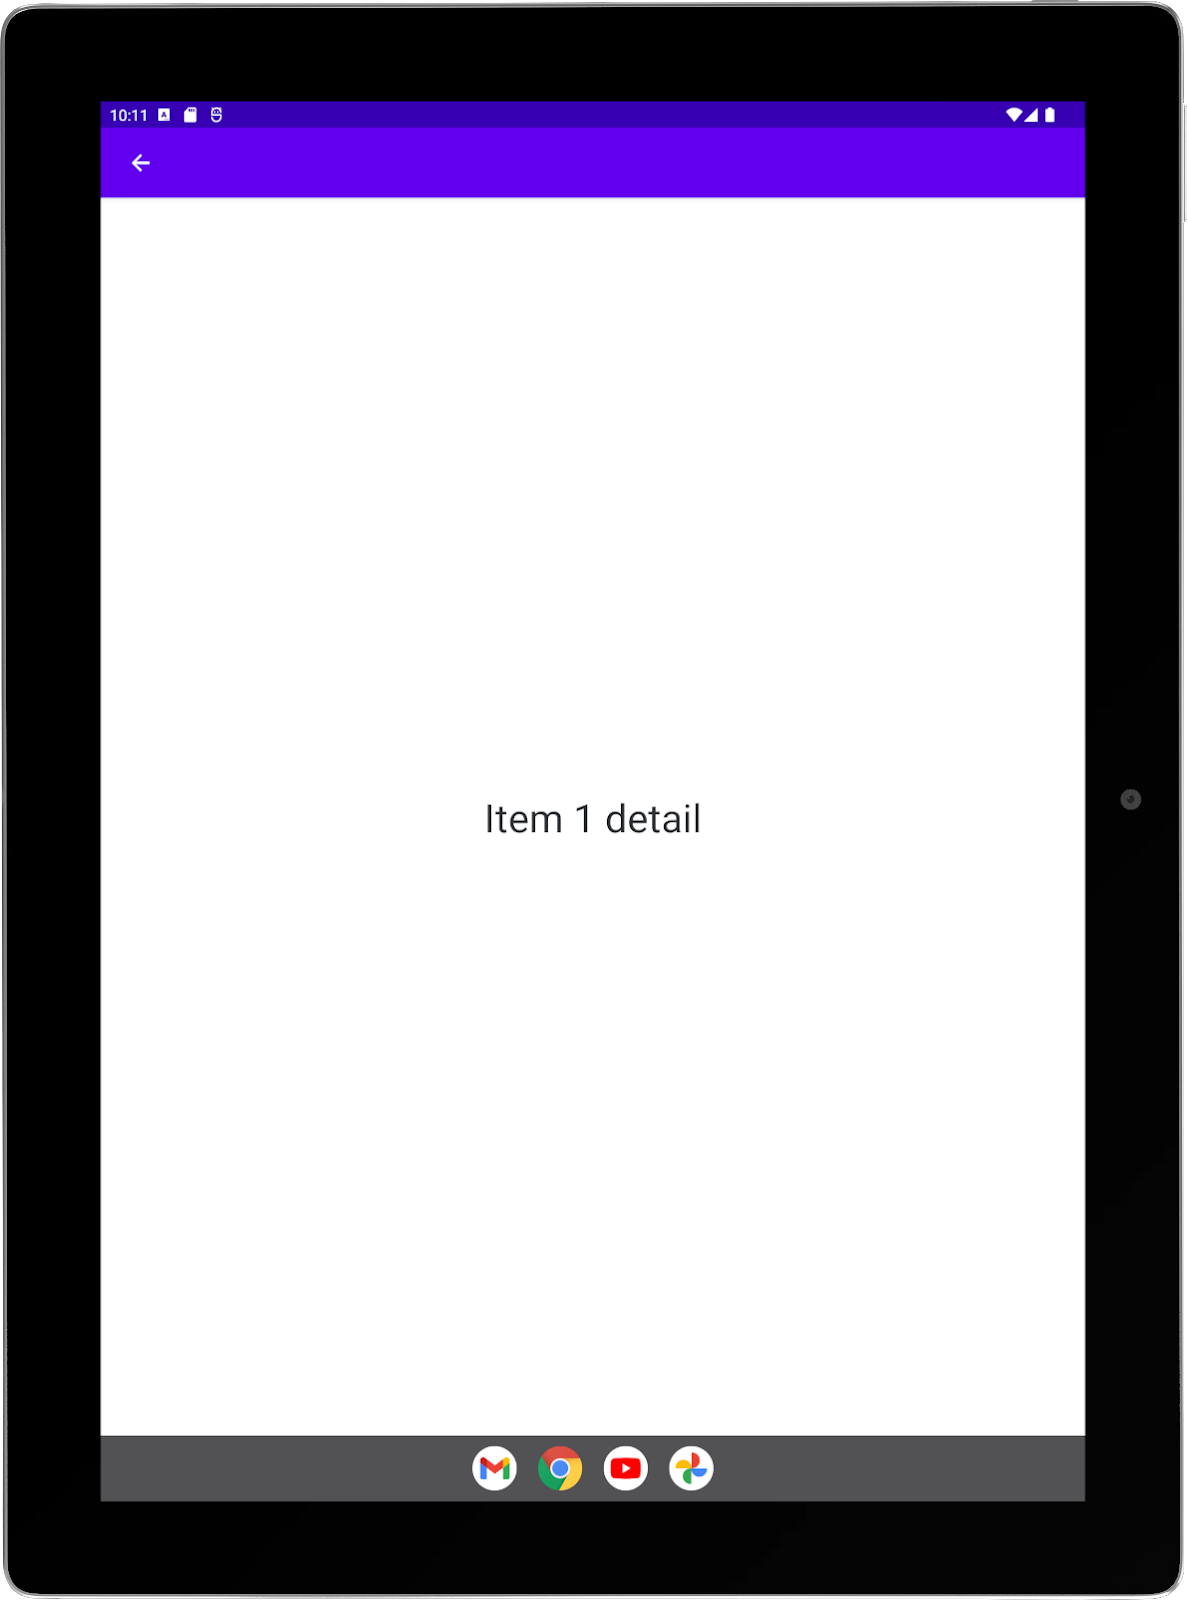 Tablet grande con la app de ejemplo ejecutándose en orientación vertical. Pantalla completa de la actividad de detalles.